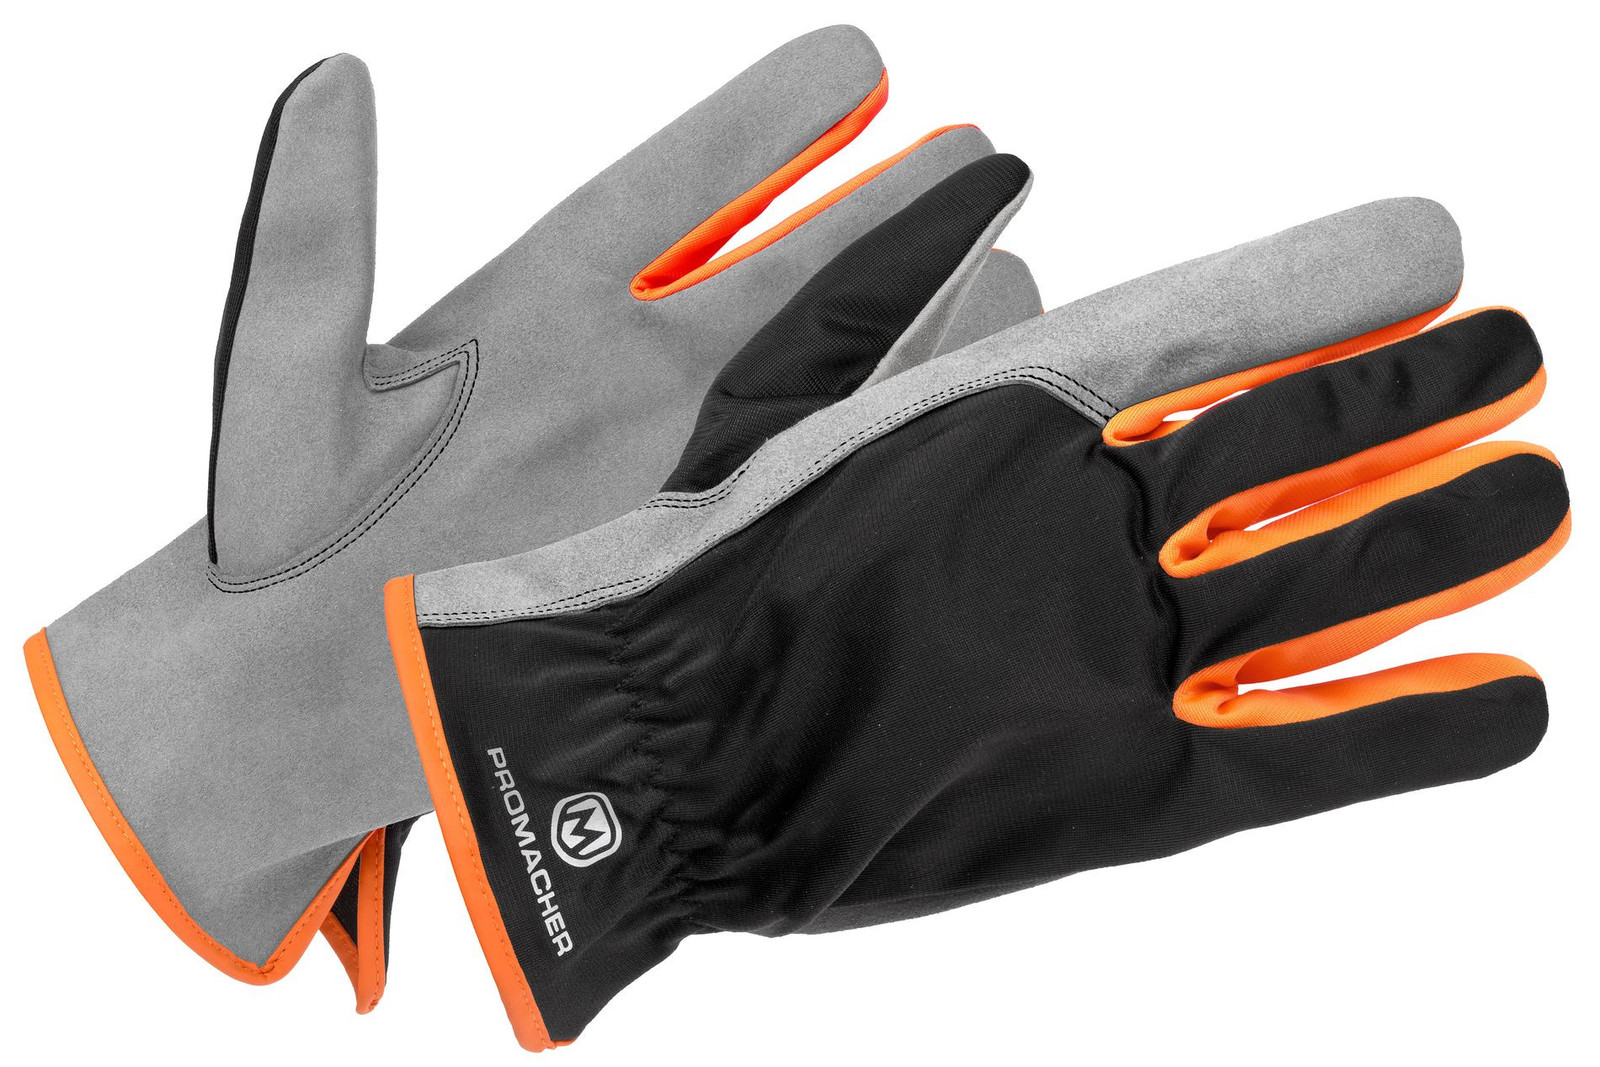 Pracovné rukavice Promacher Carpos kombinované - veľkosť: 7/S, farba: svetlo sivá/ oranžová